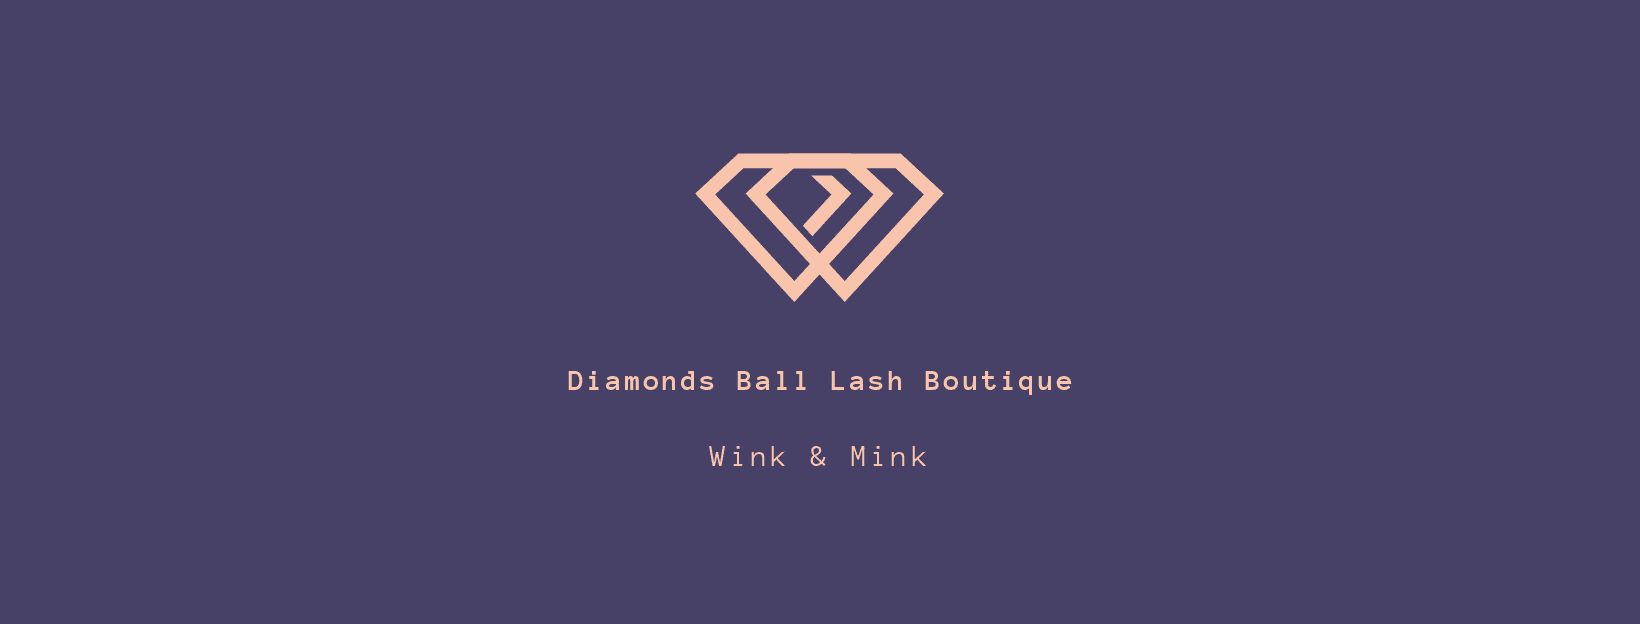 Diamonds Ball Lash Boutique